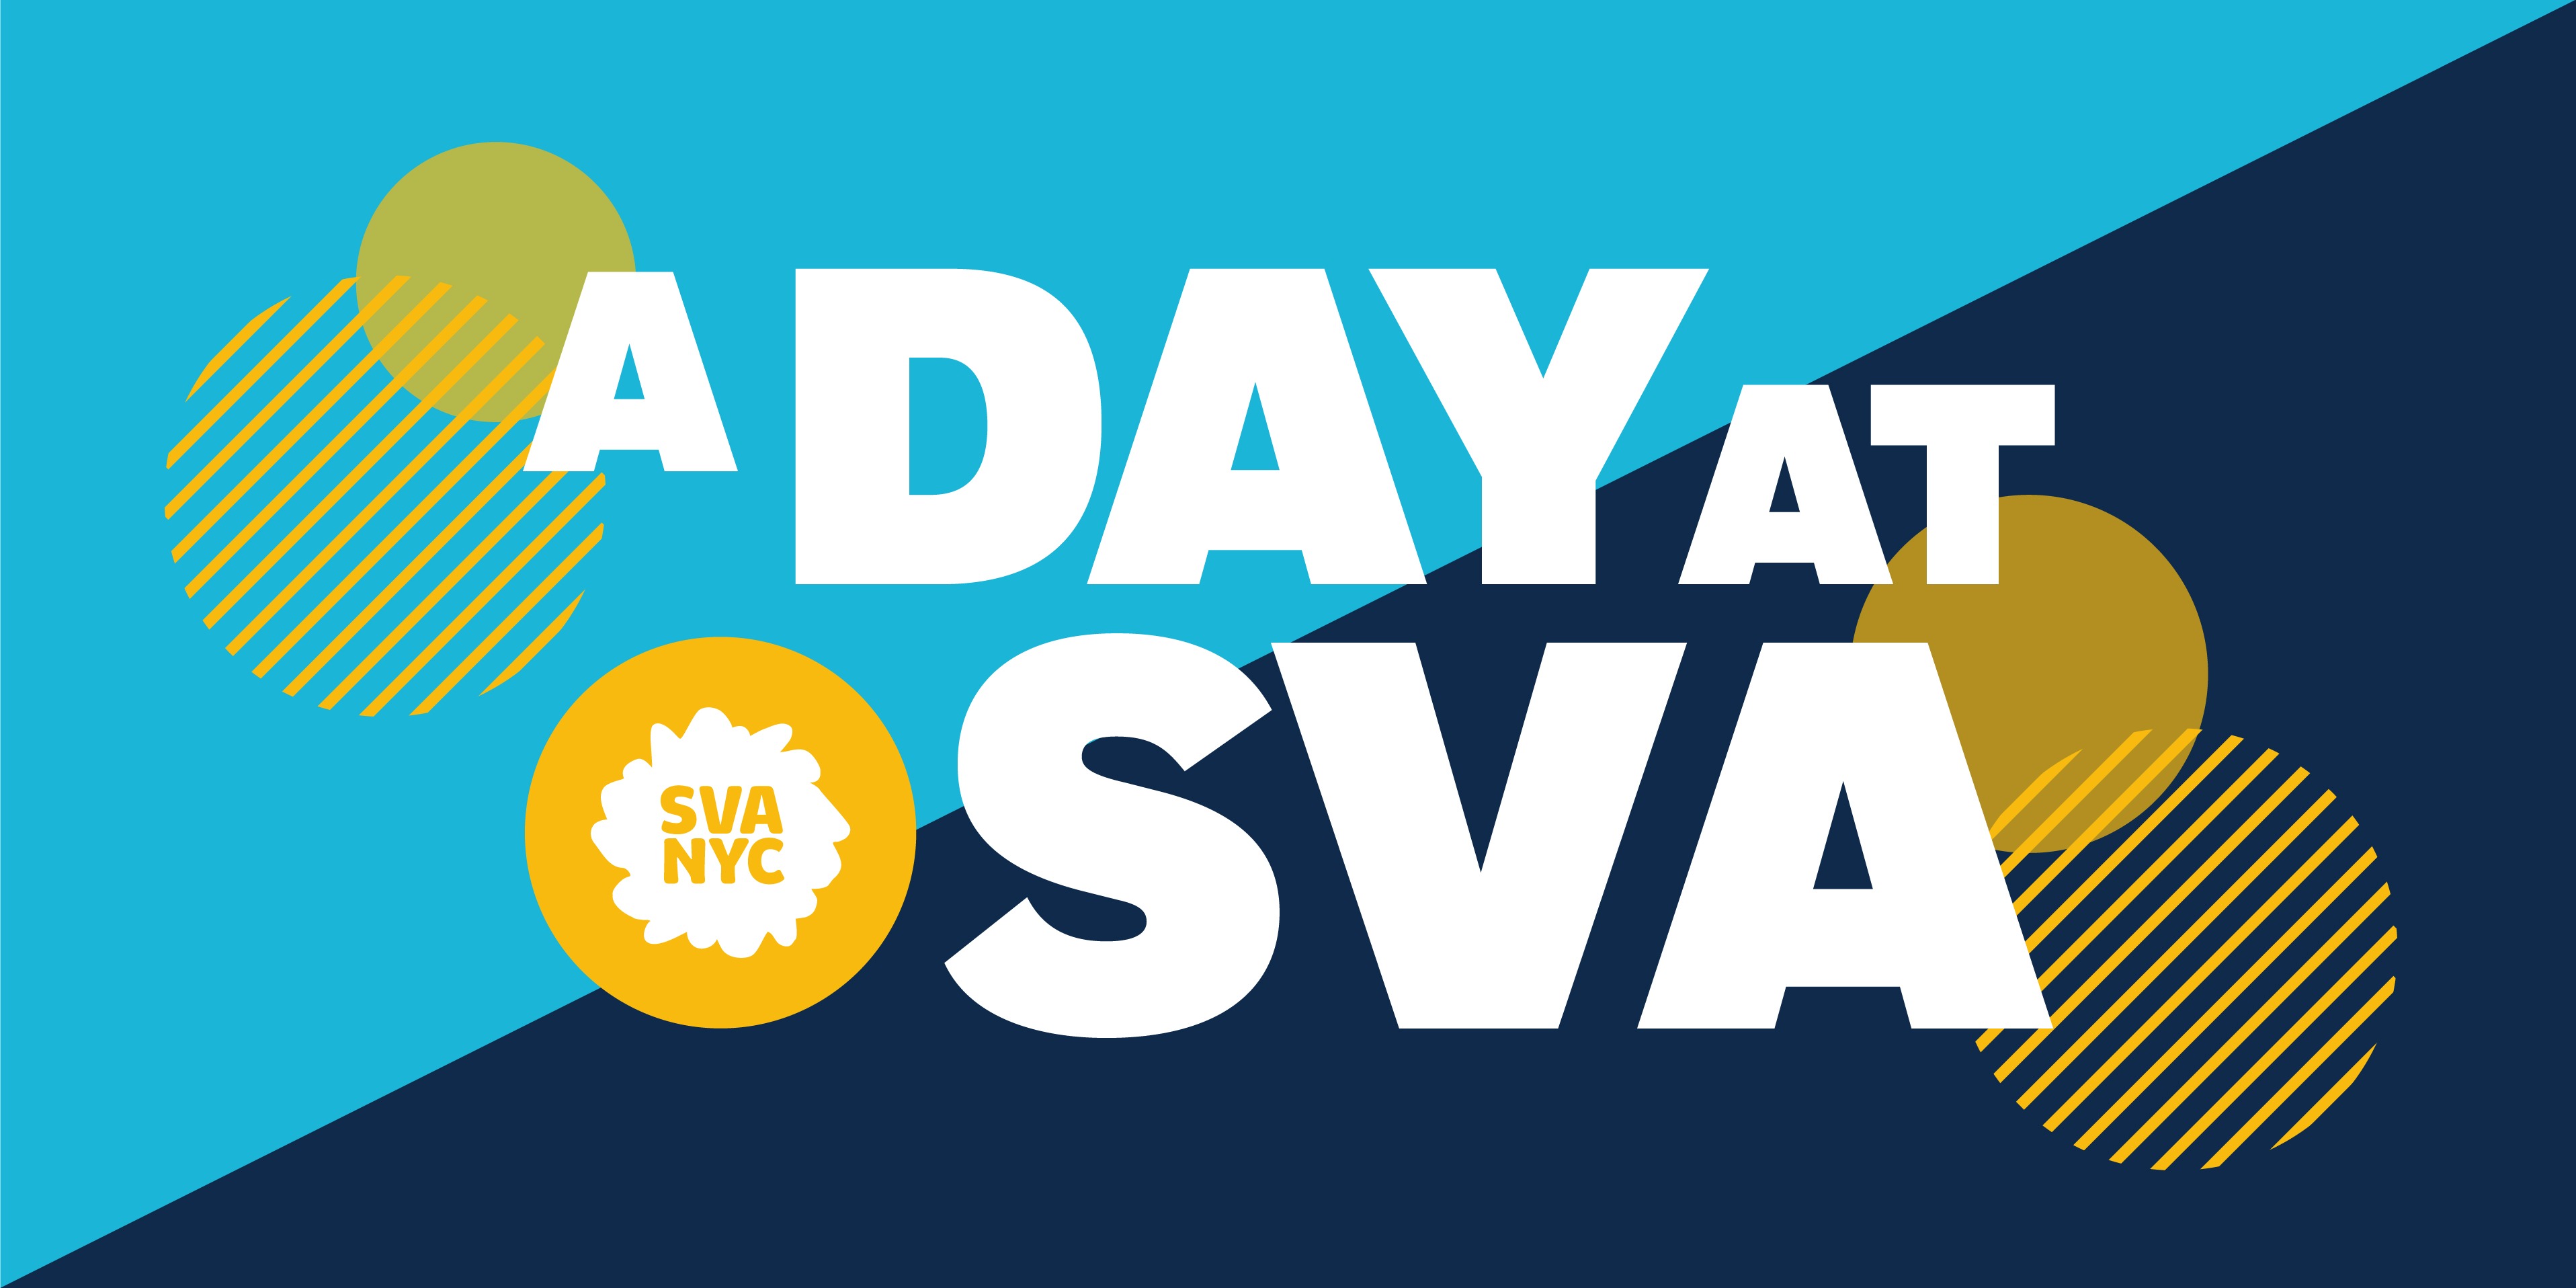 A Day at SVA logo